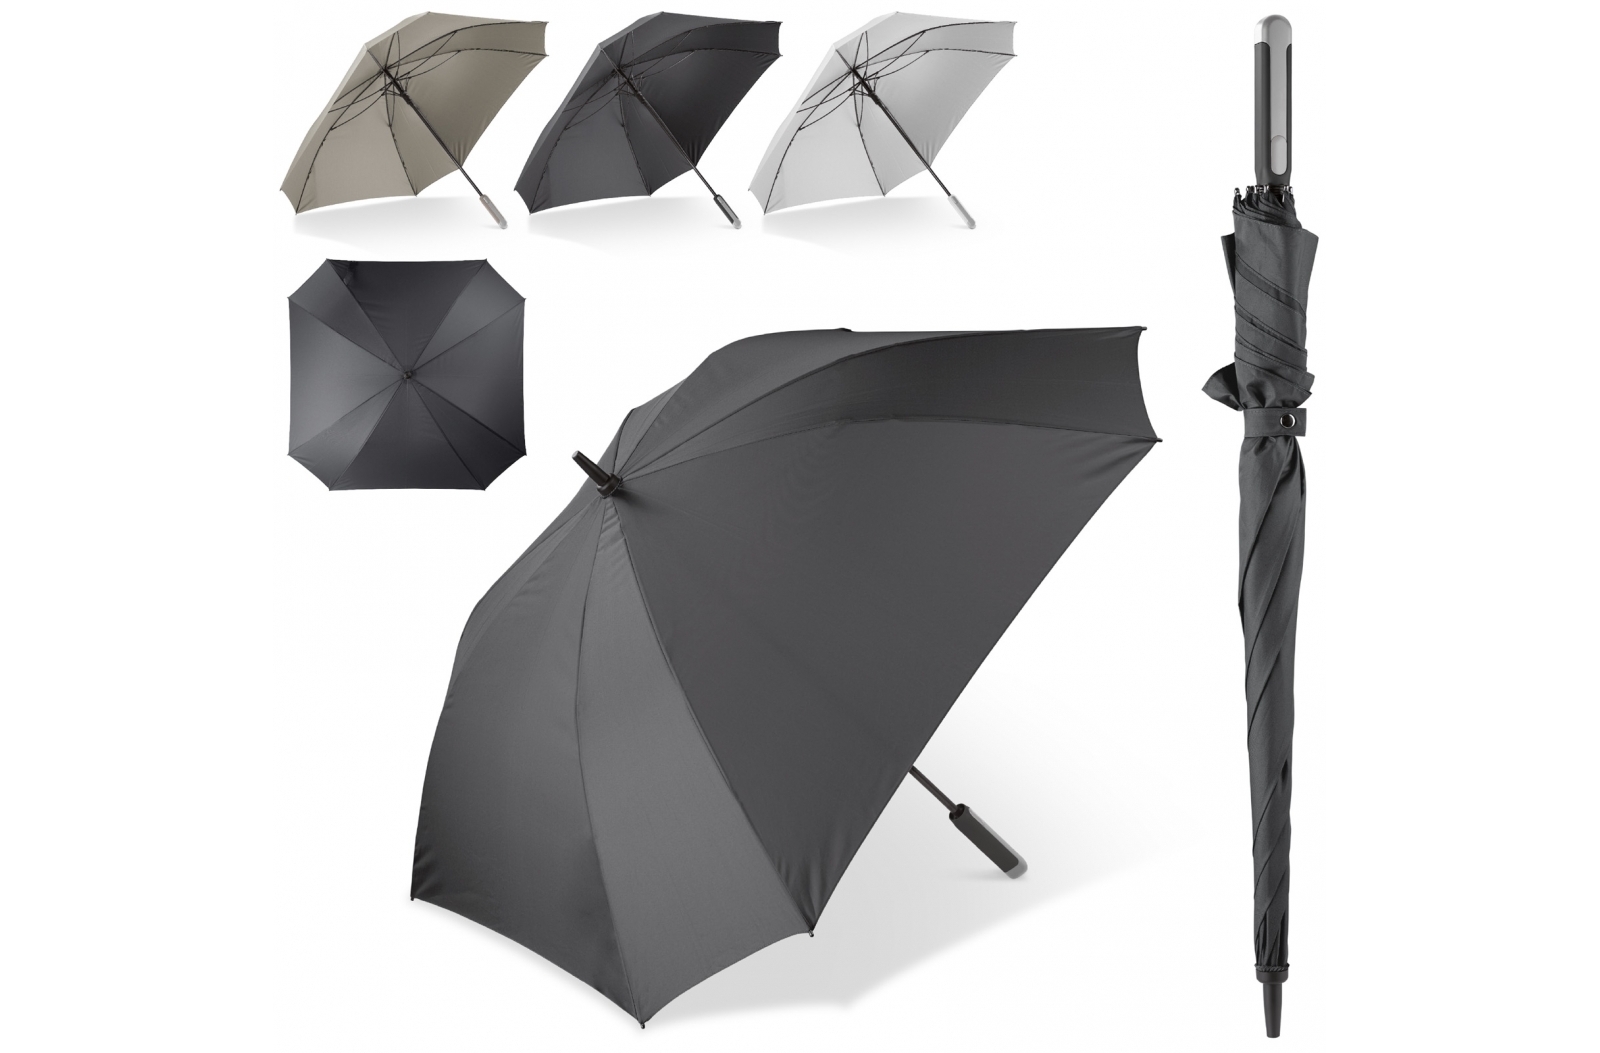 Luxus Regenschirm mit Hülle 27”